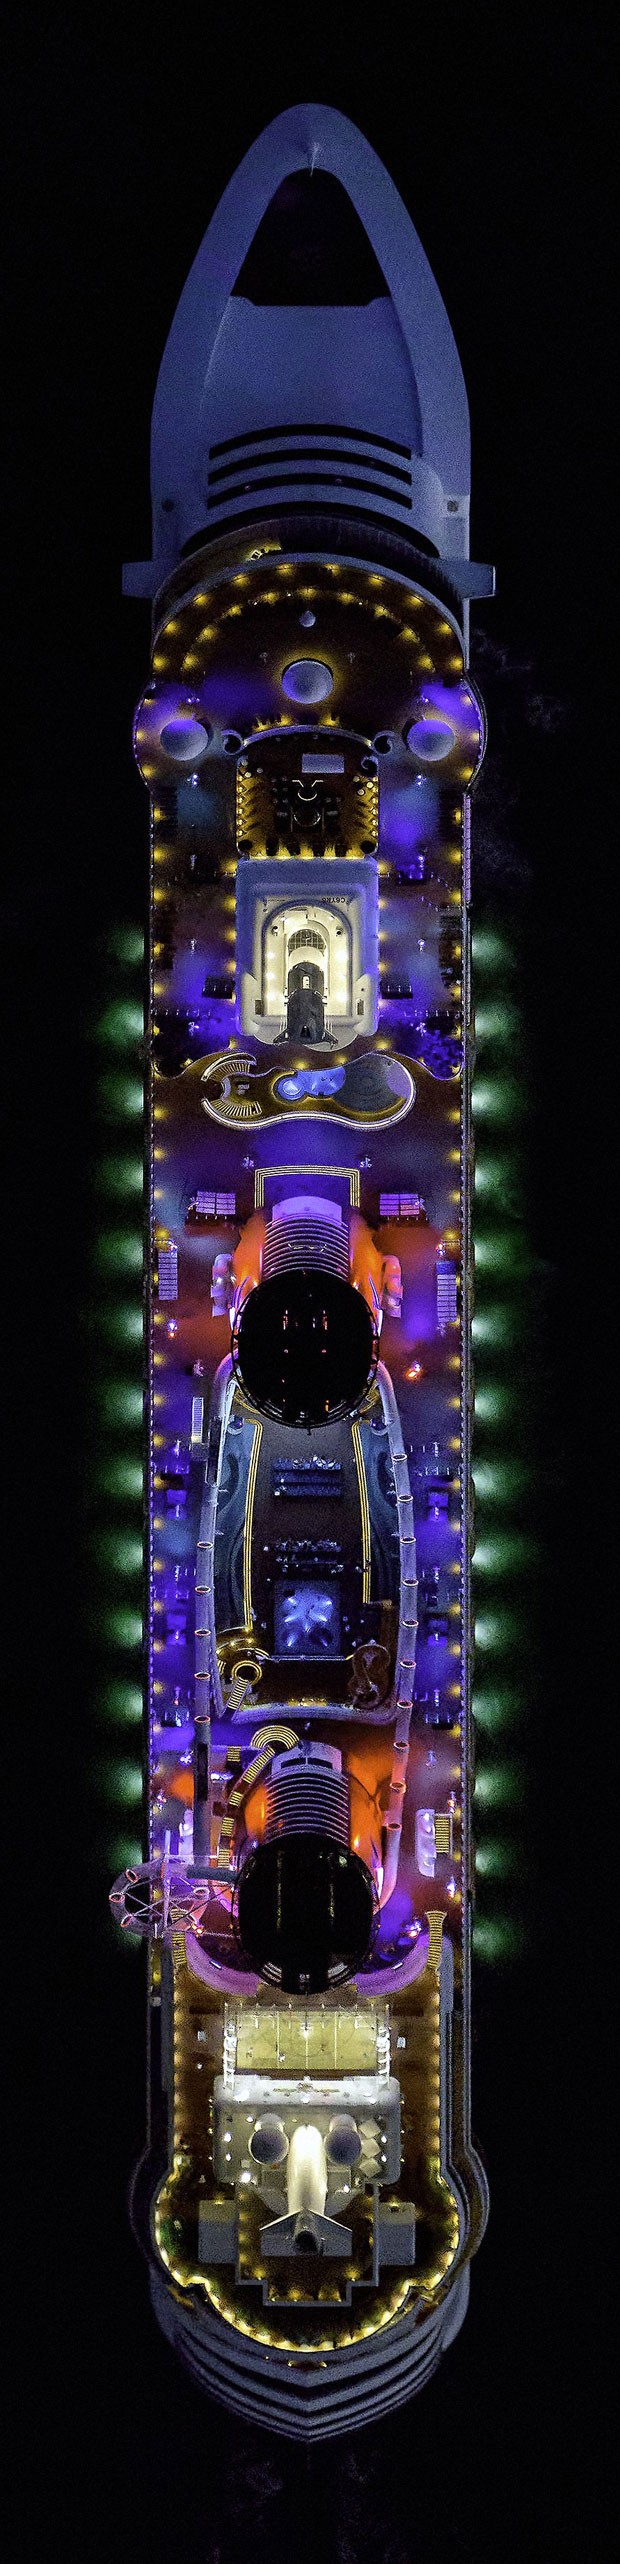 Disney Dream, cruzeiro do estúdio americano, é visto à noite com suas luzes coloridas acesas (Foto: Jeffrey Milstein/Rex Features)